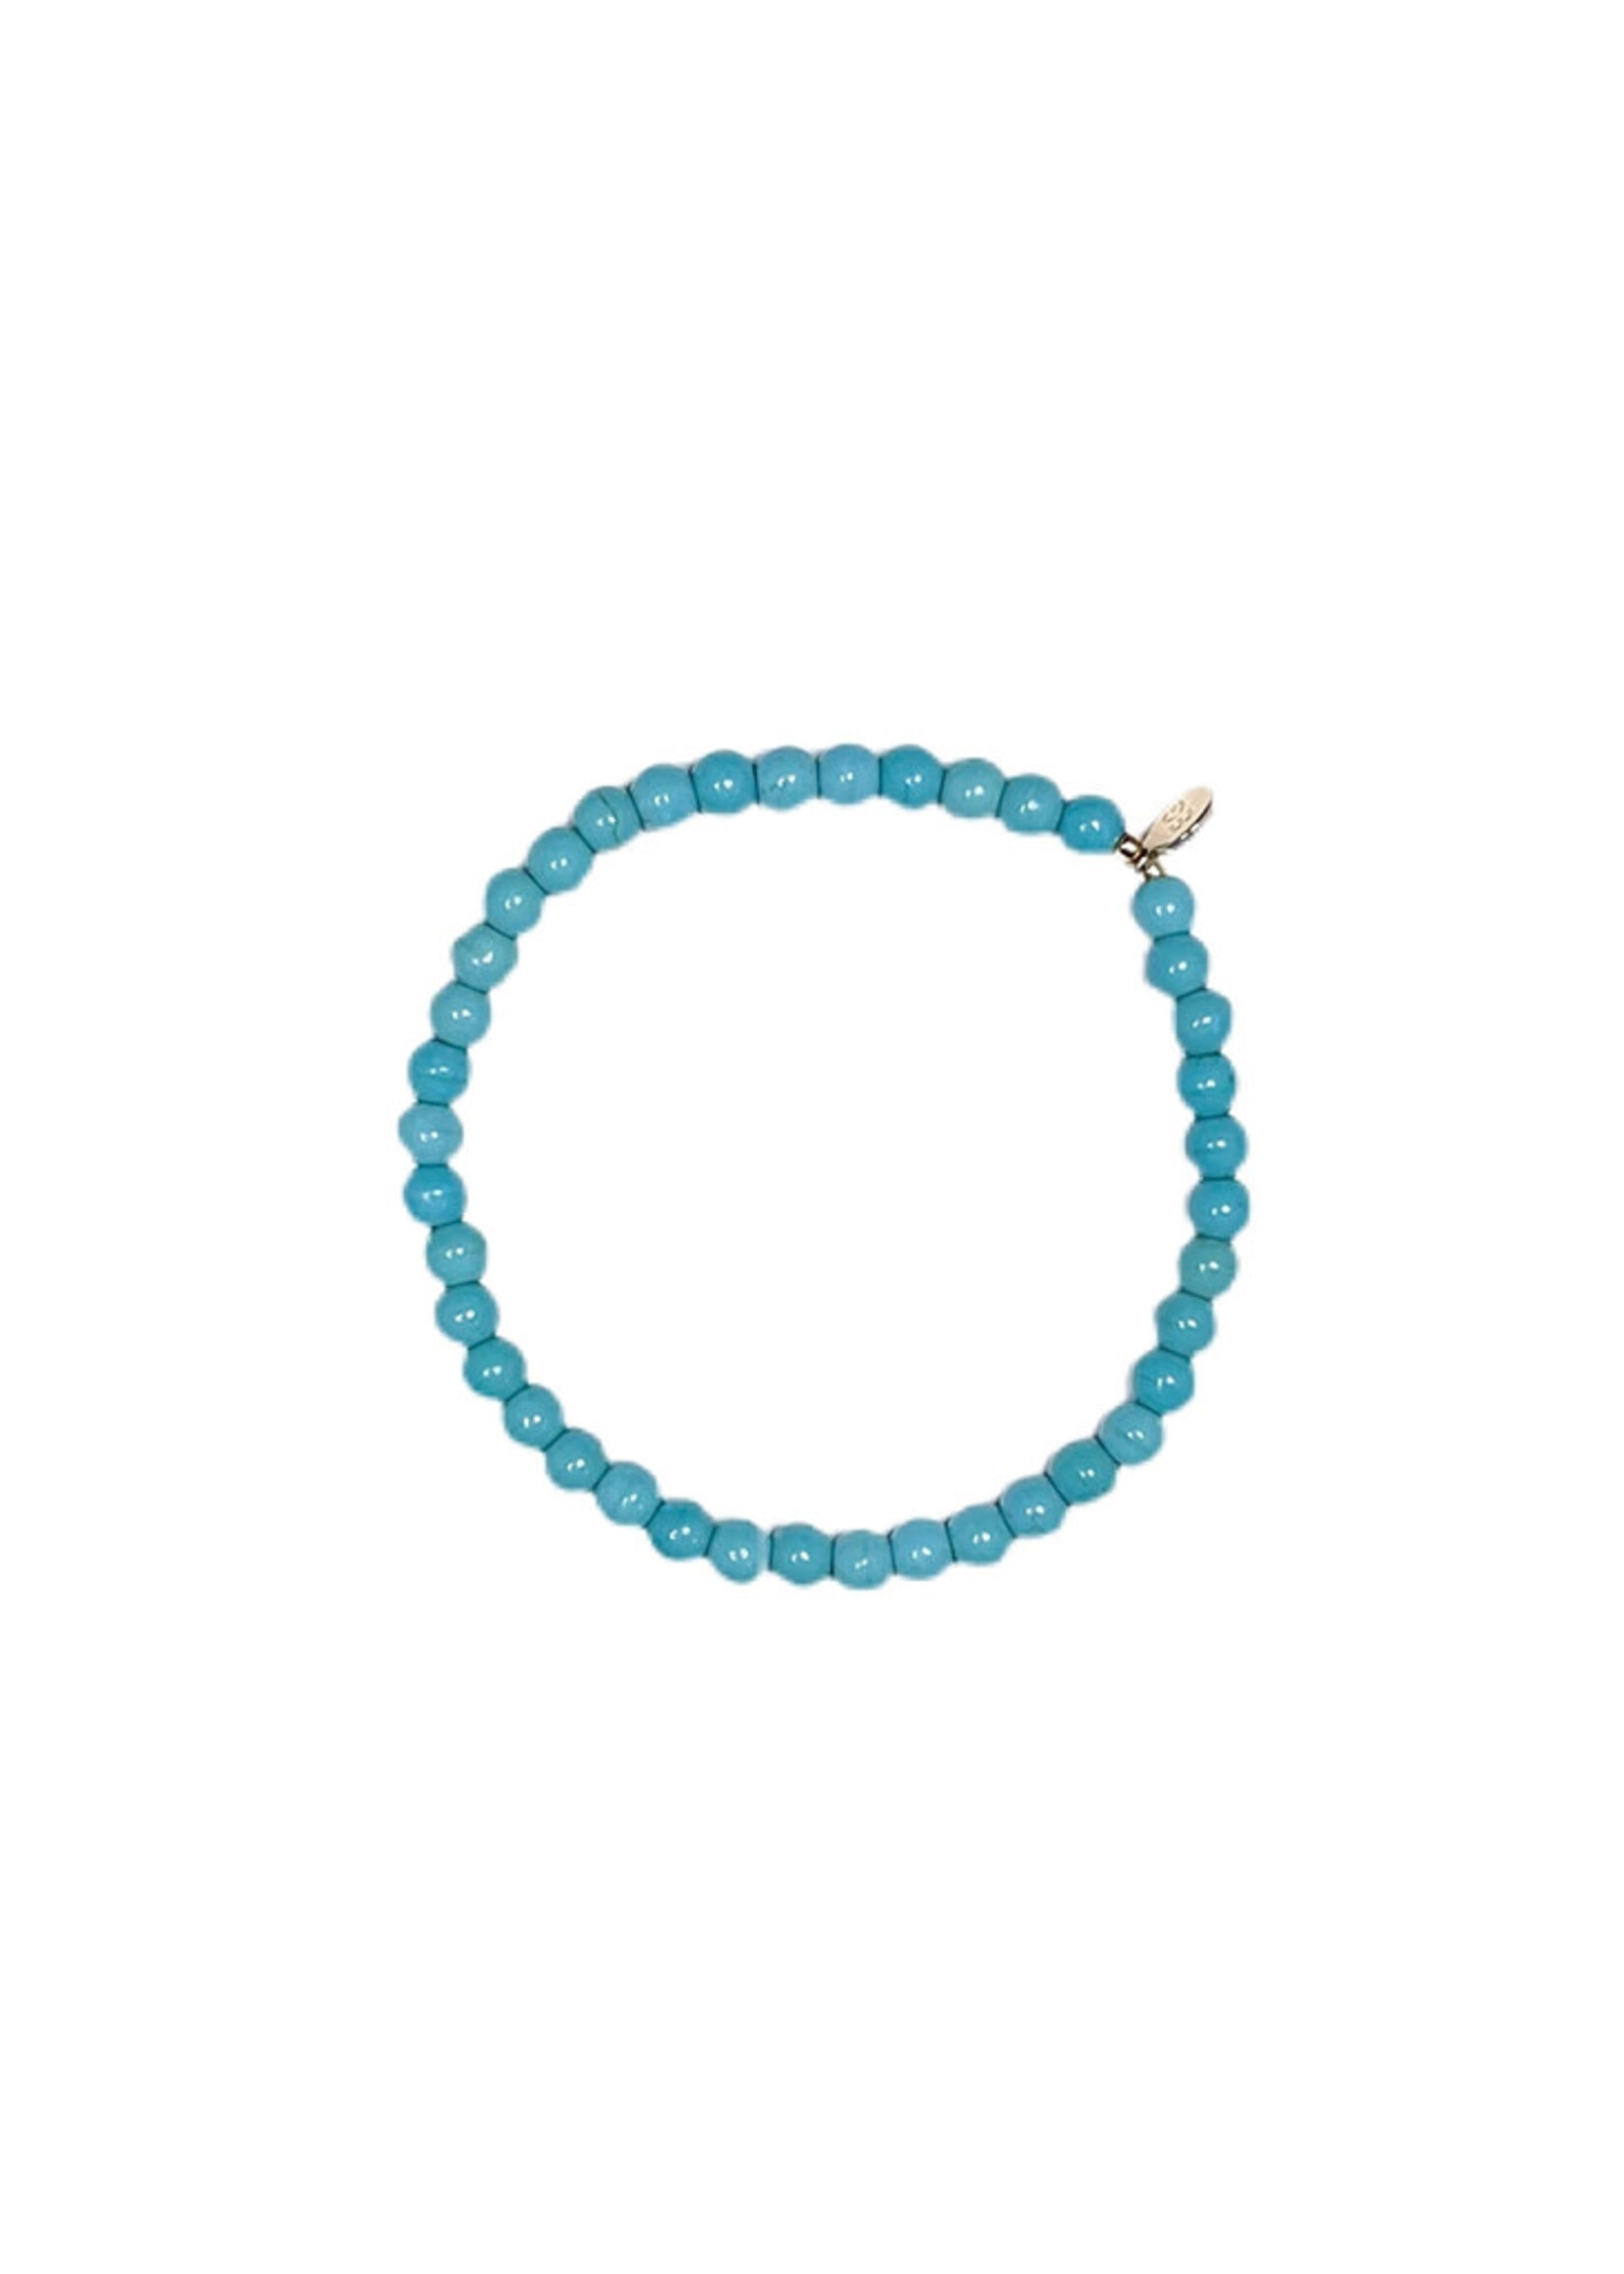 Ethic Goods Stone Stacking Bracelet - Turquoise